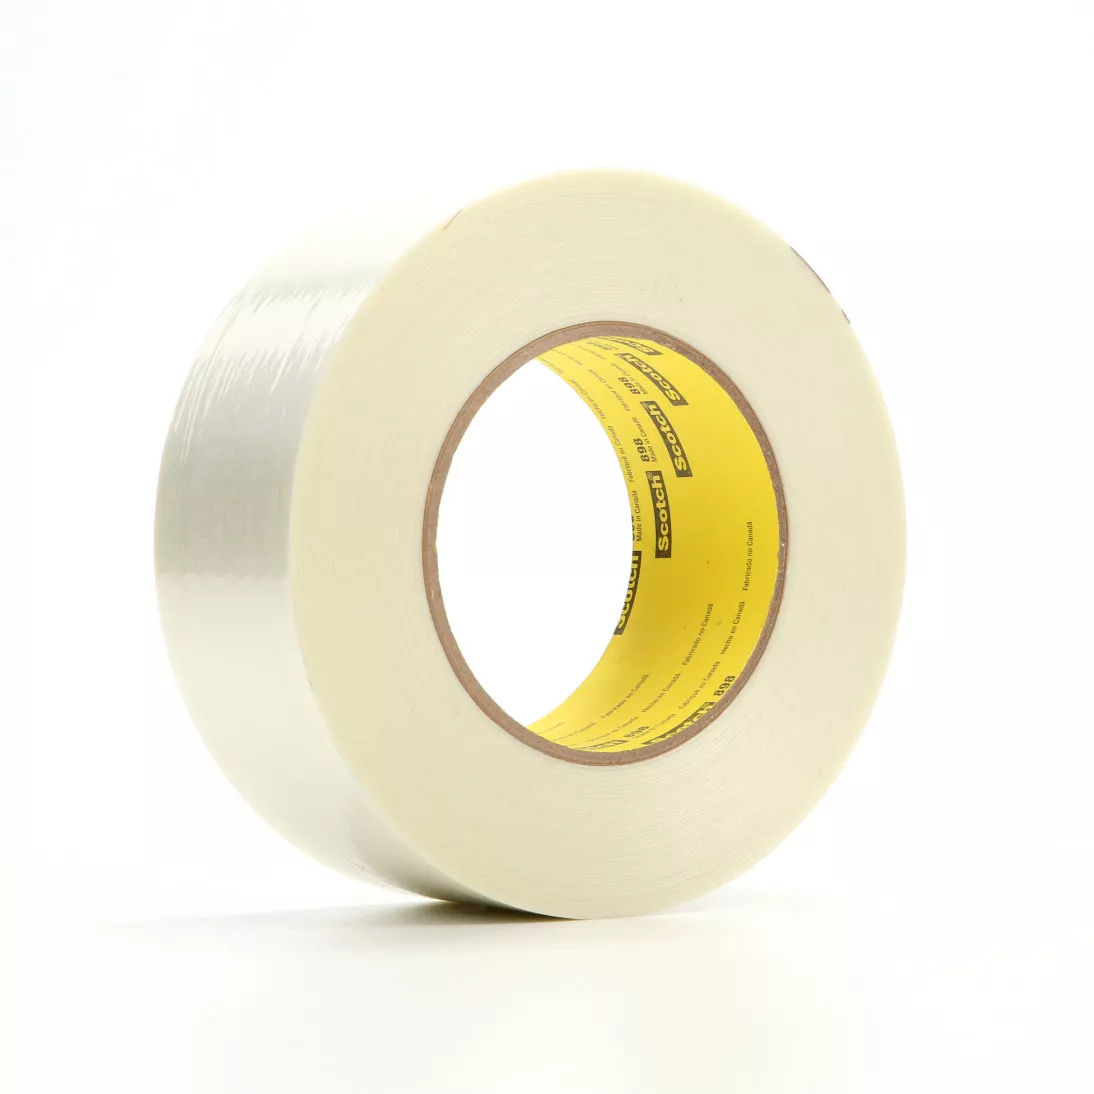 Scotch® Filament Tape 898, Clear, 48 in x 60 yd, 6.6 mil, 1 roll per
case